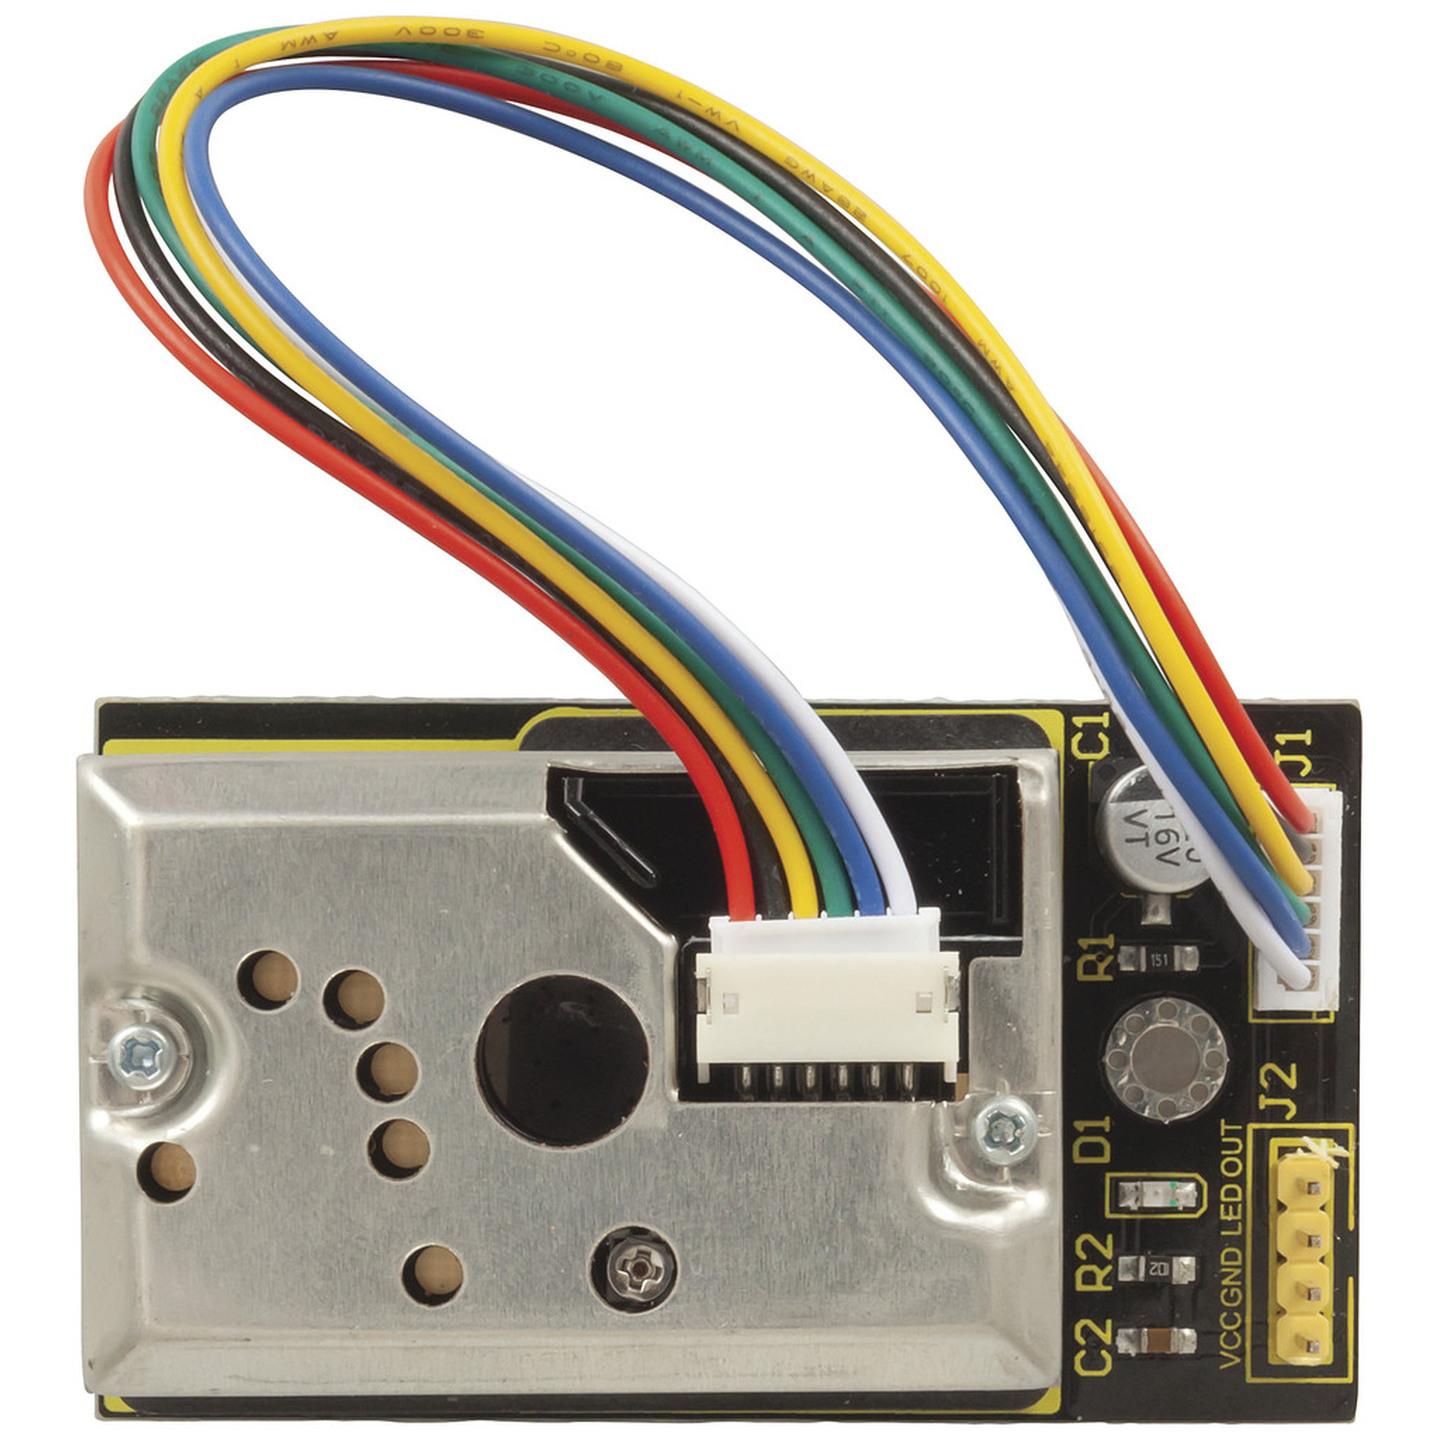 Duinotech Arduino Compatible Dust Sensor